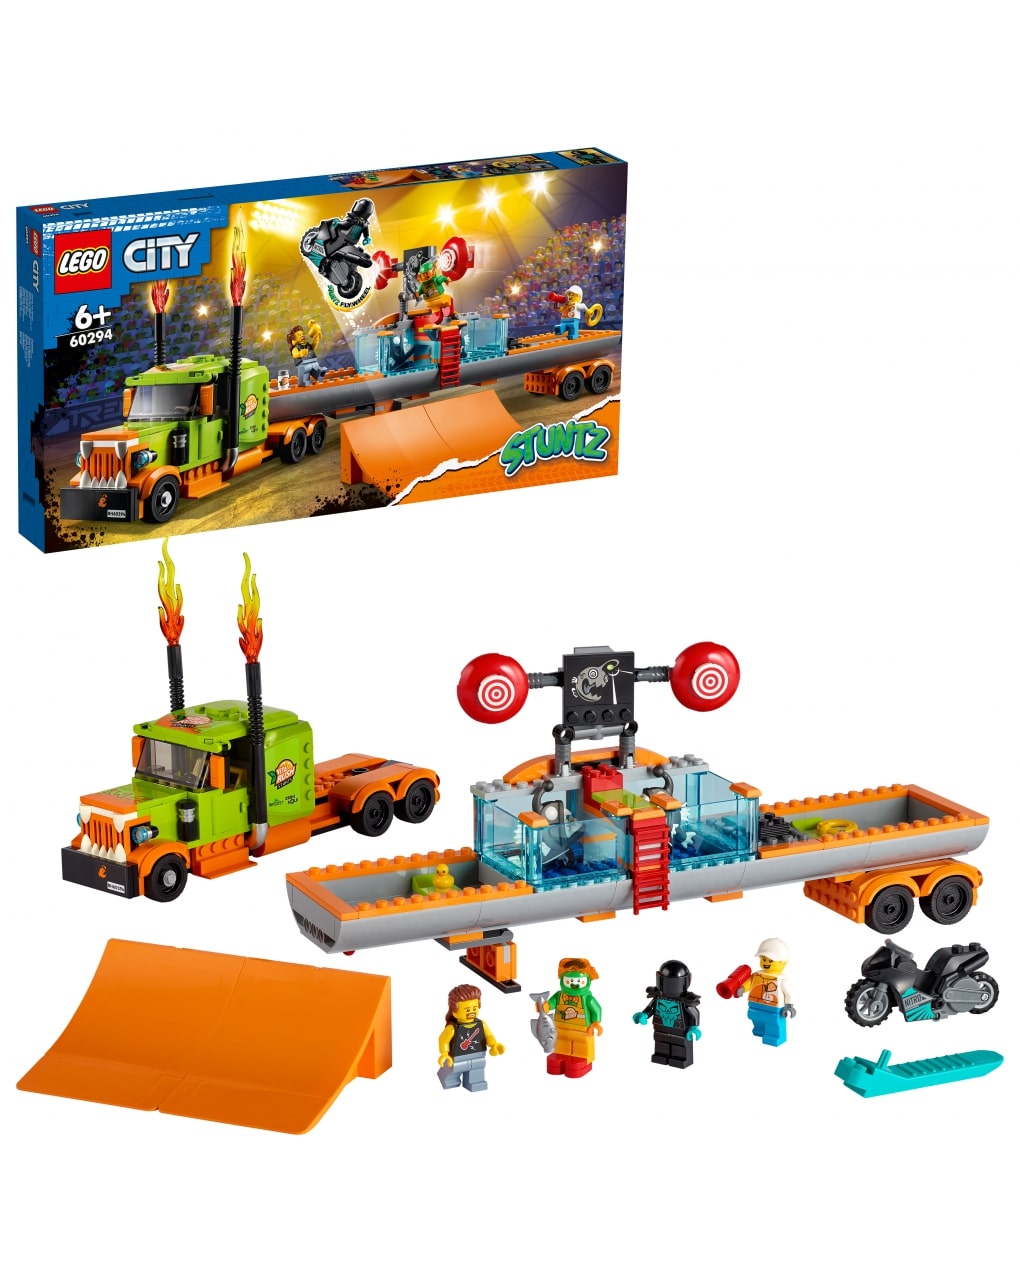 Lego city stuntz - truck dello stunt show - 60294 - LEGO